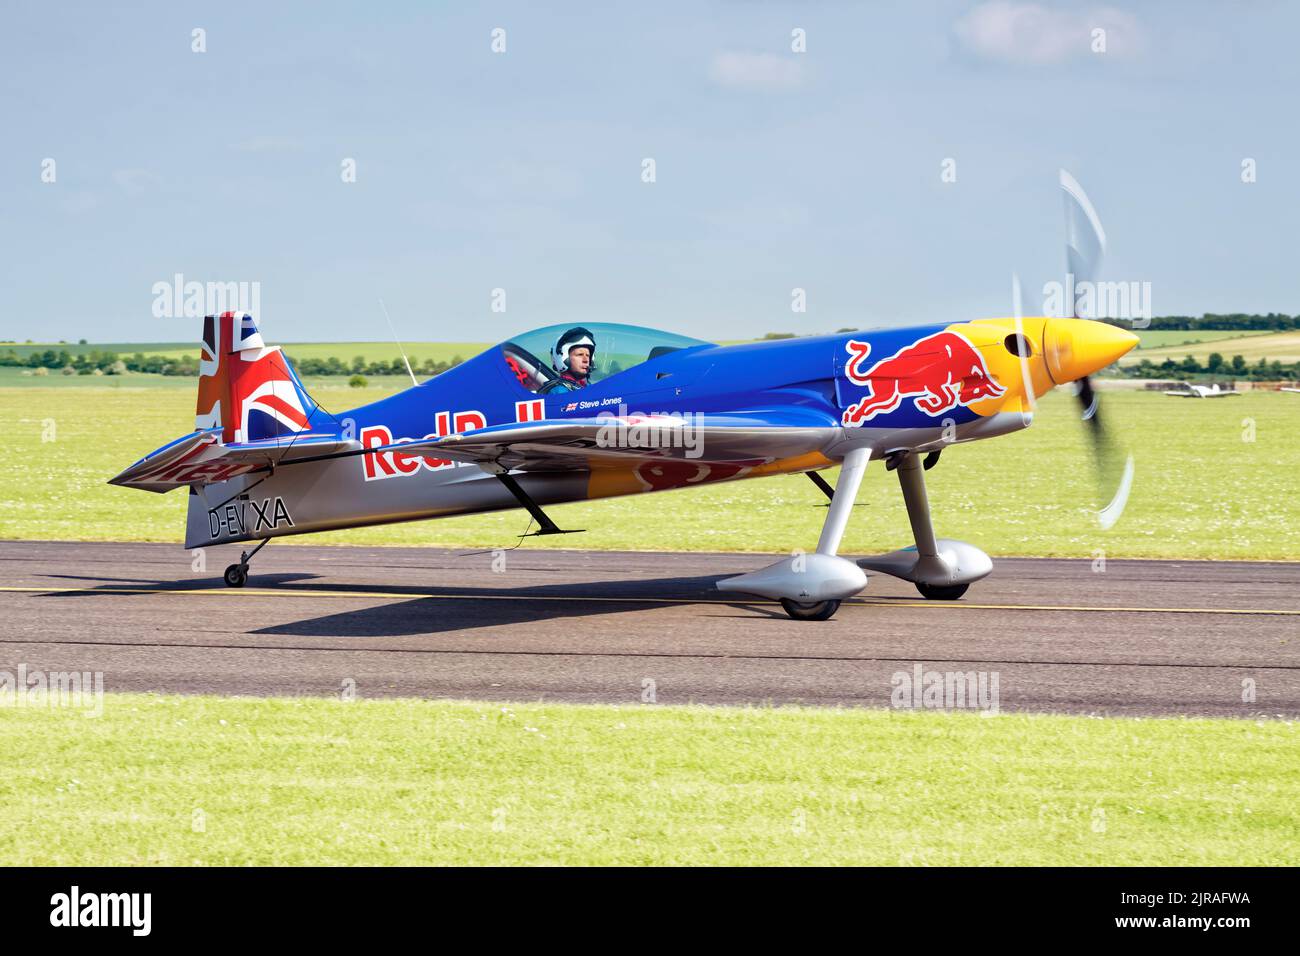 El avión de carreras Redbull rodando en el aeródromo de Duxford. Foto de stock